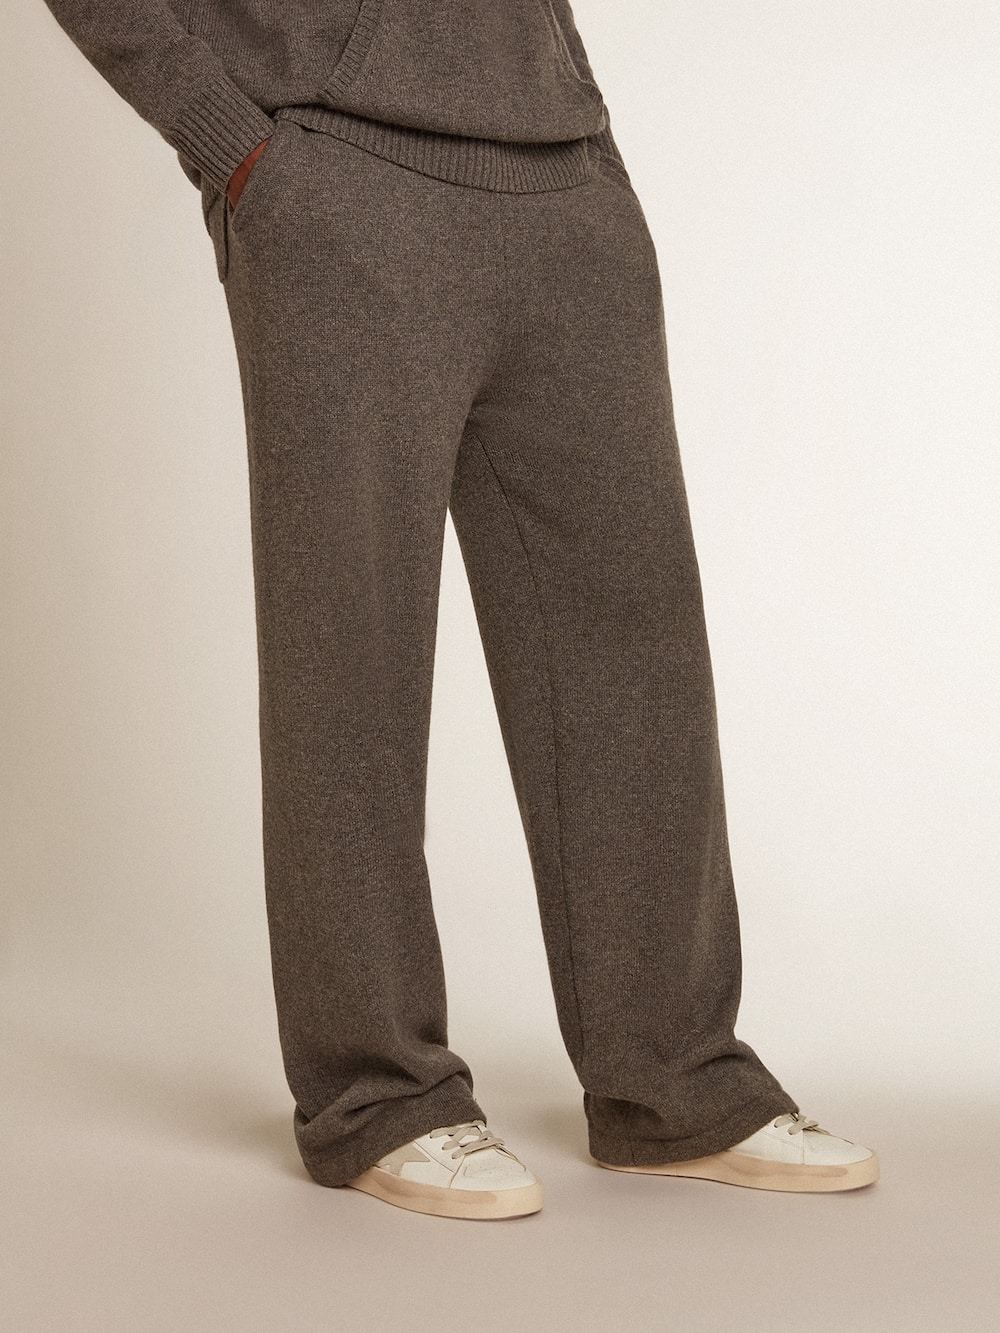 Golden Goose - Pantalón jogger de hombre en mezcla de cachemira color gris jaspeado in 